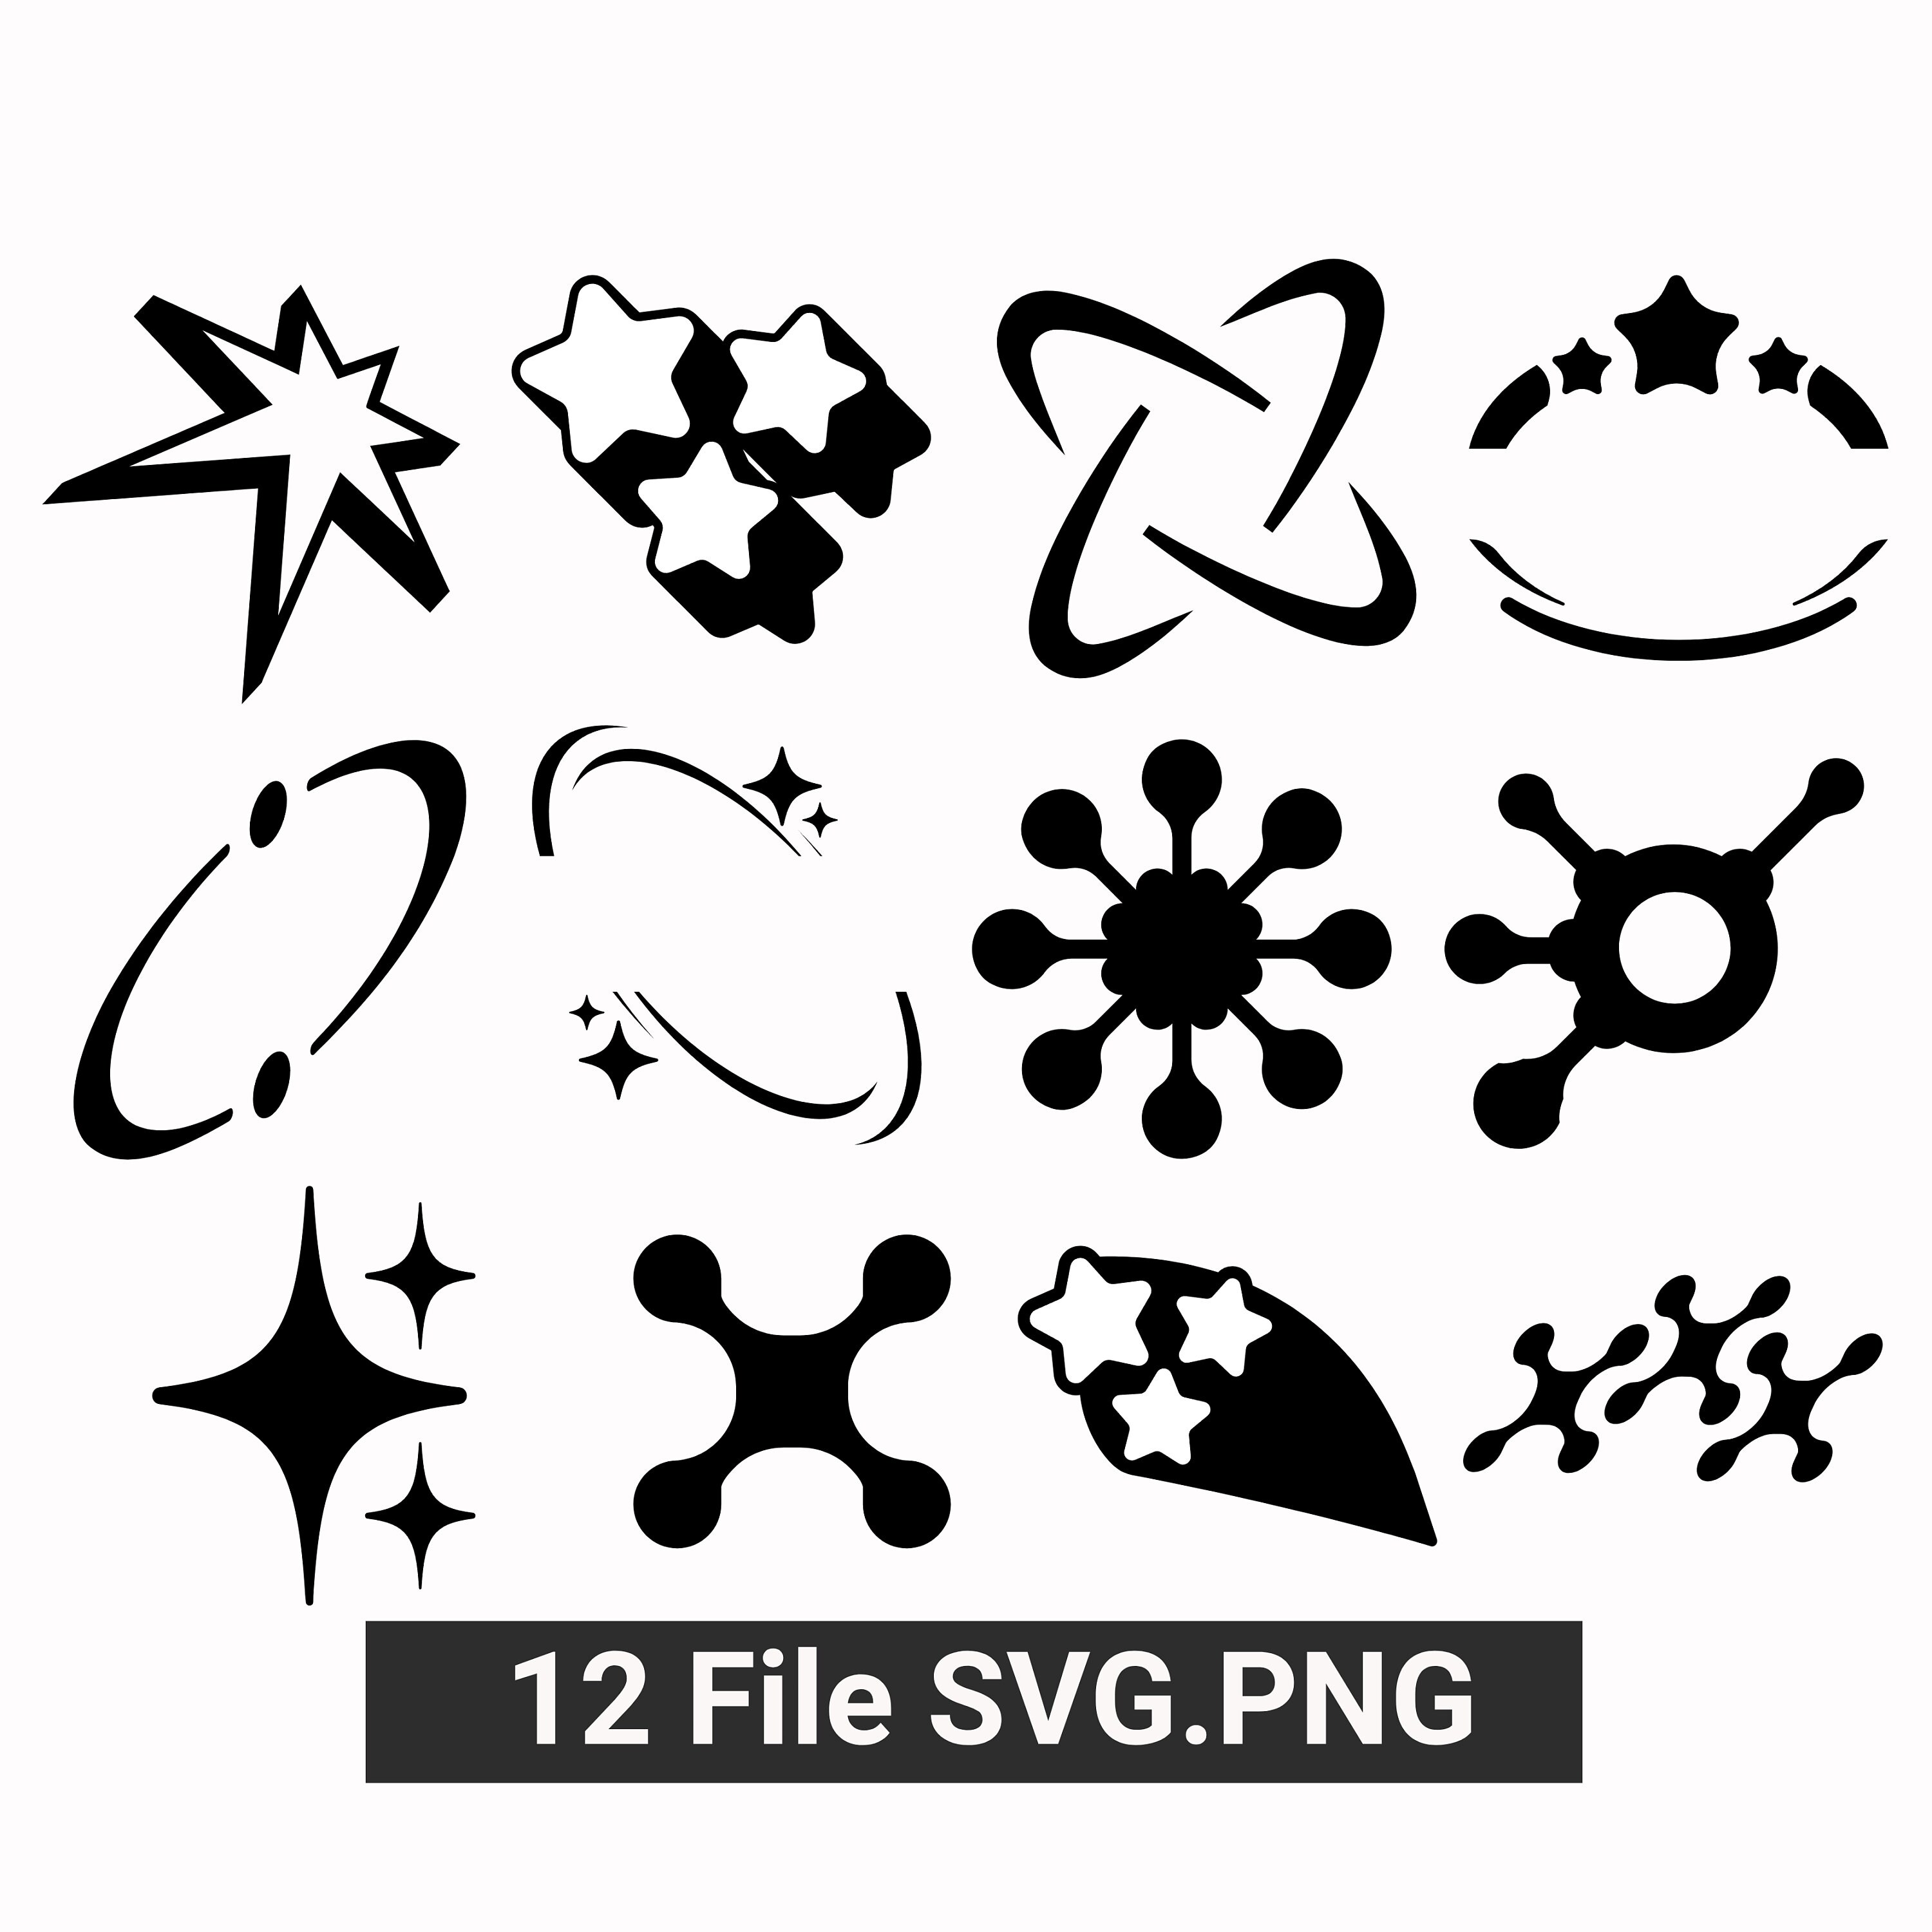 Y2K Attributes 12 File SVG. Filepng - Etsy